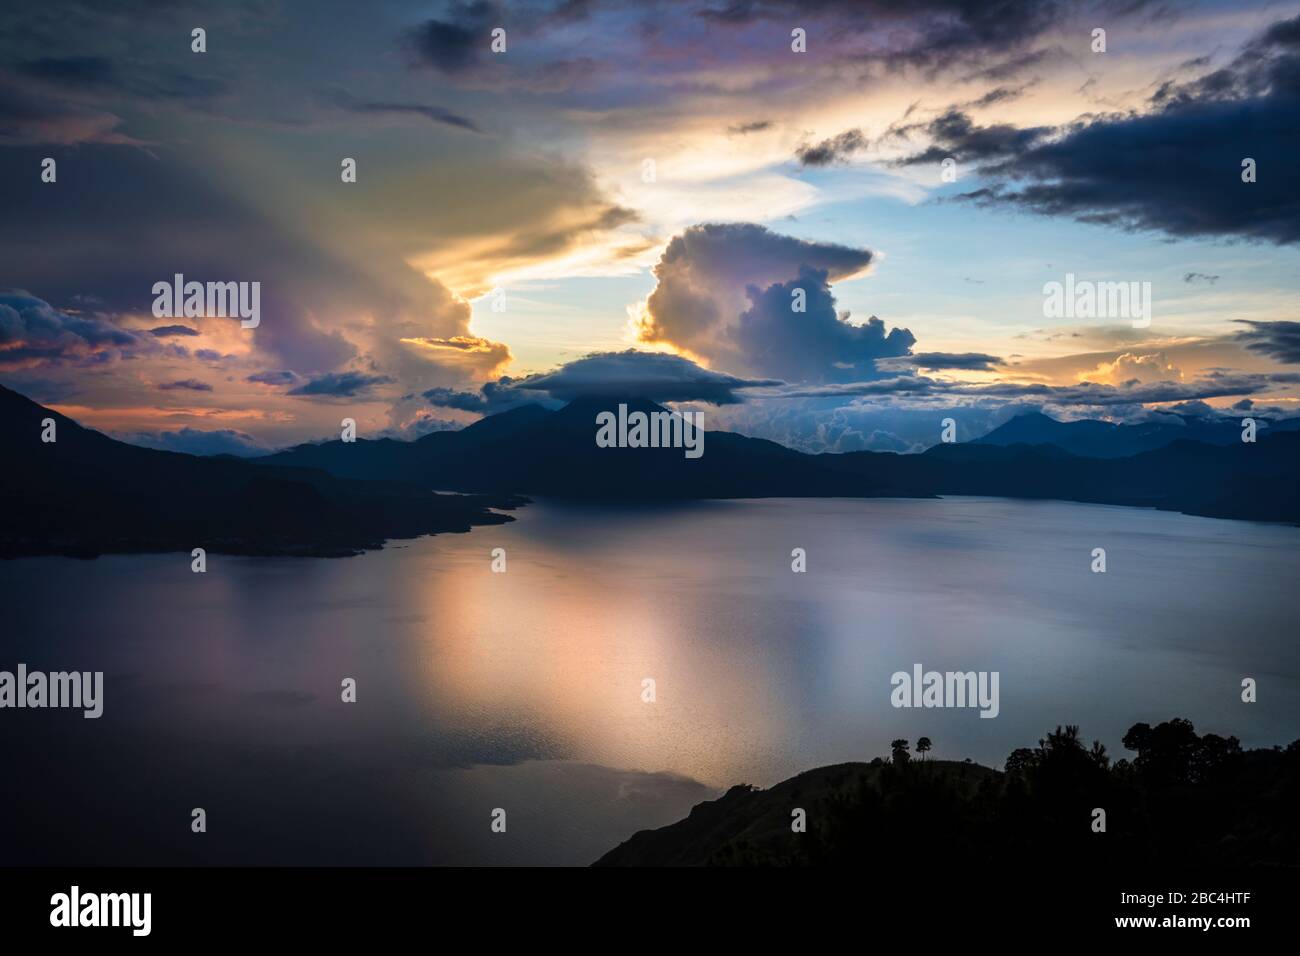 Sunset over Lake Atitlan, Guatemala. Stock Photo